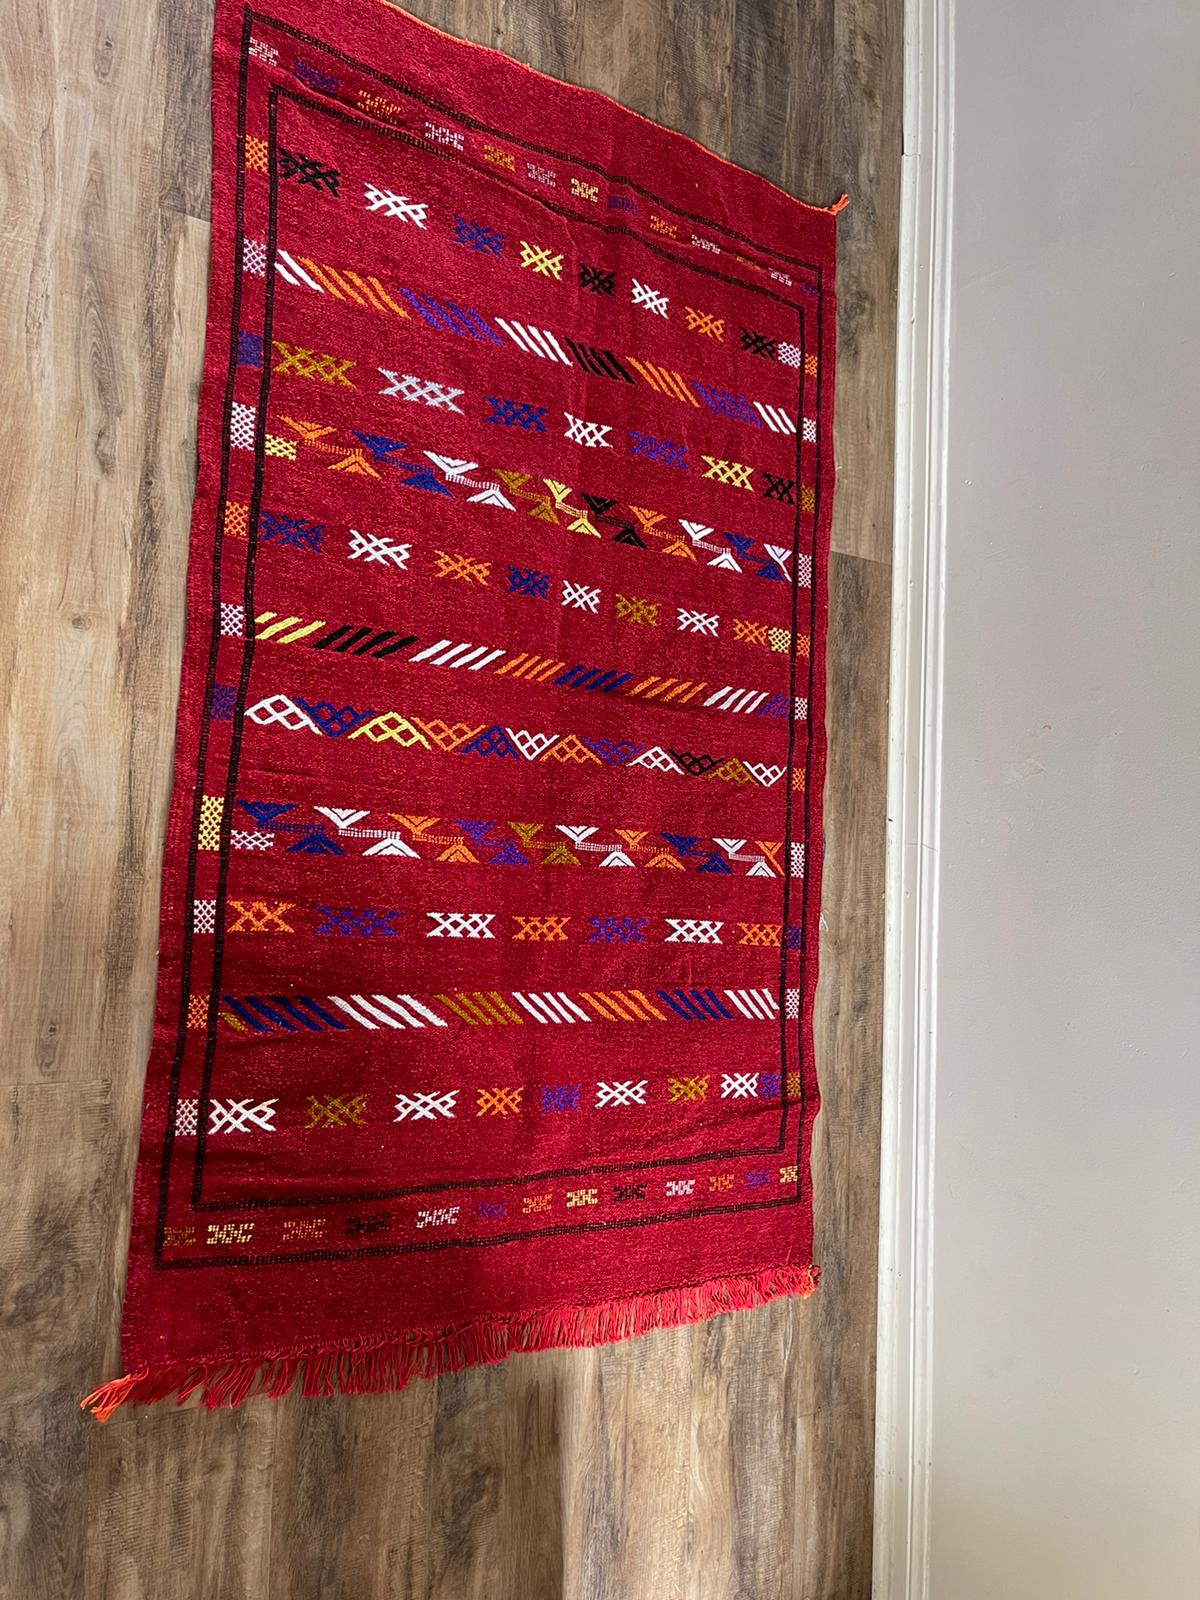 wool rug - 150 by 100 cm